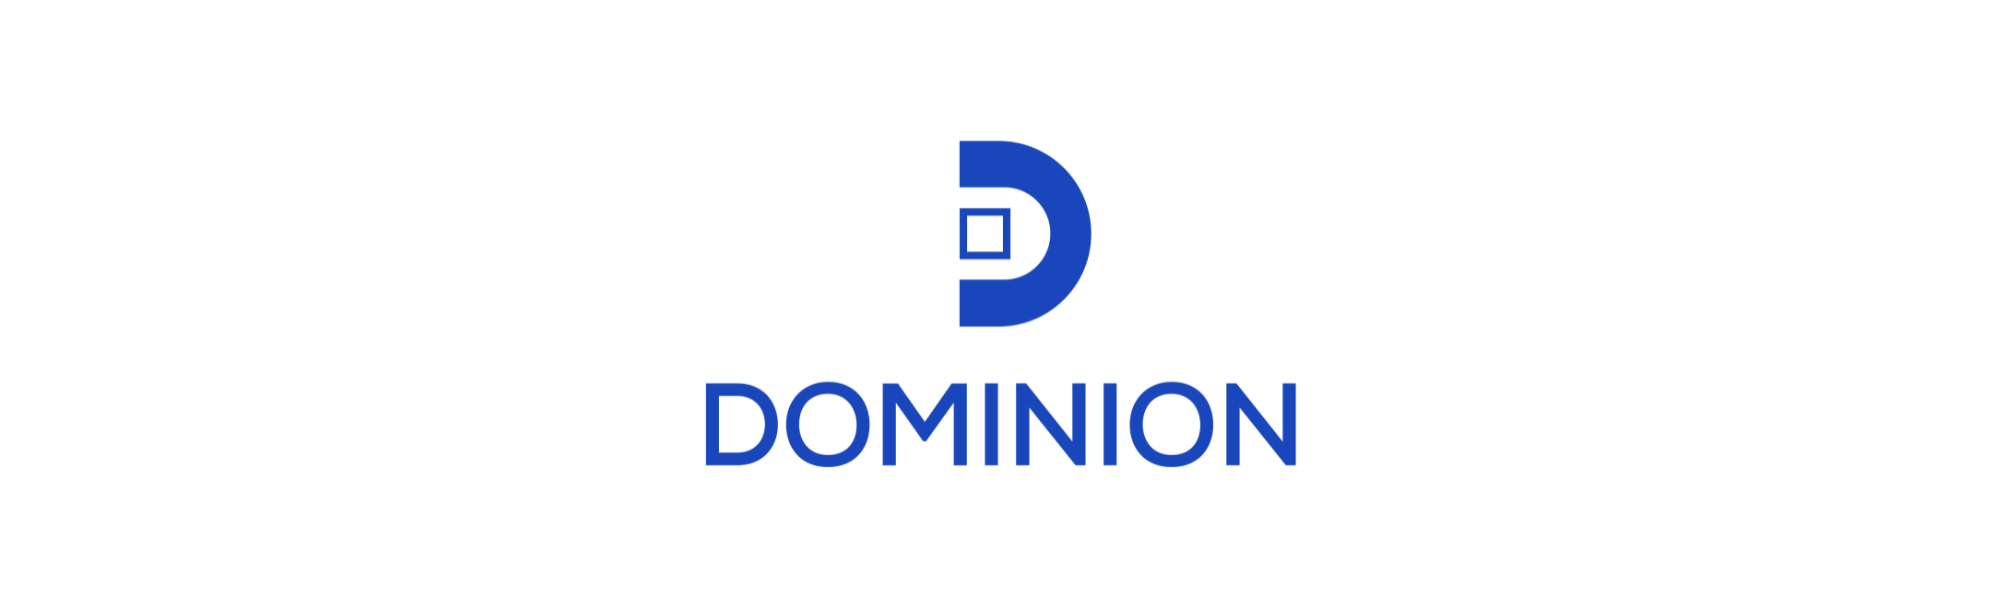 dominion case study